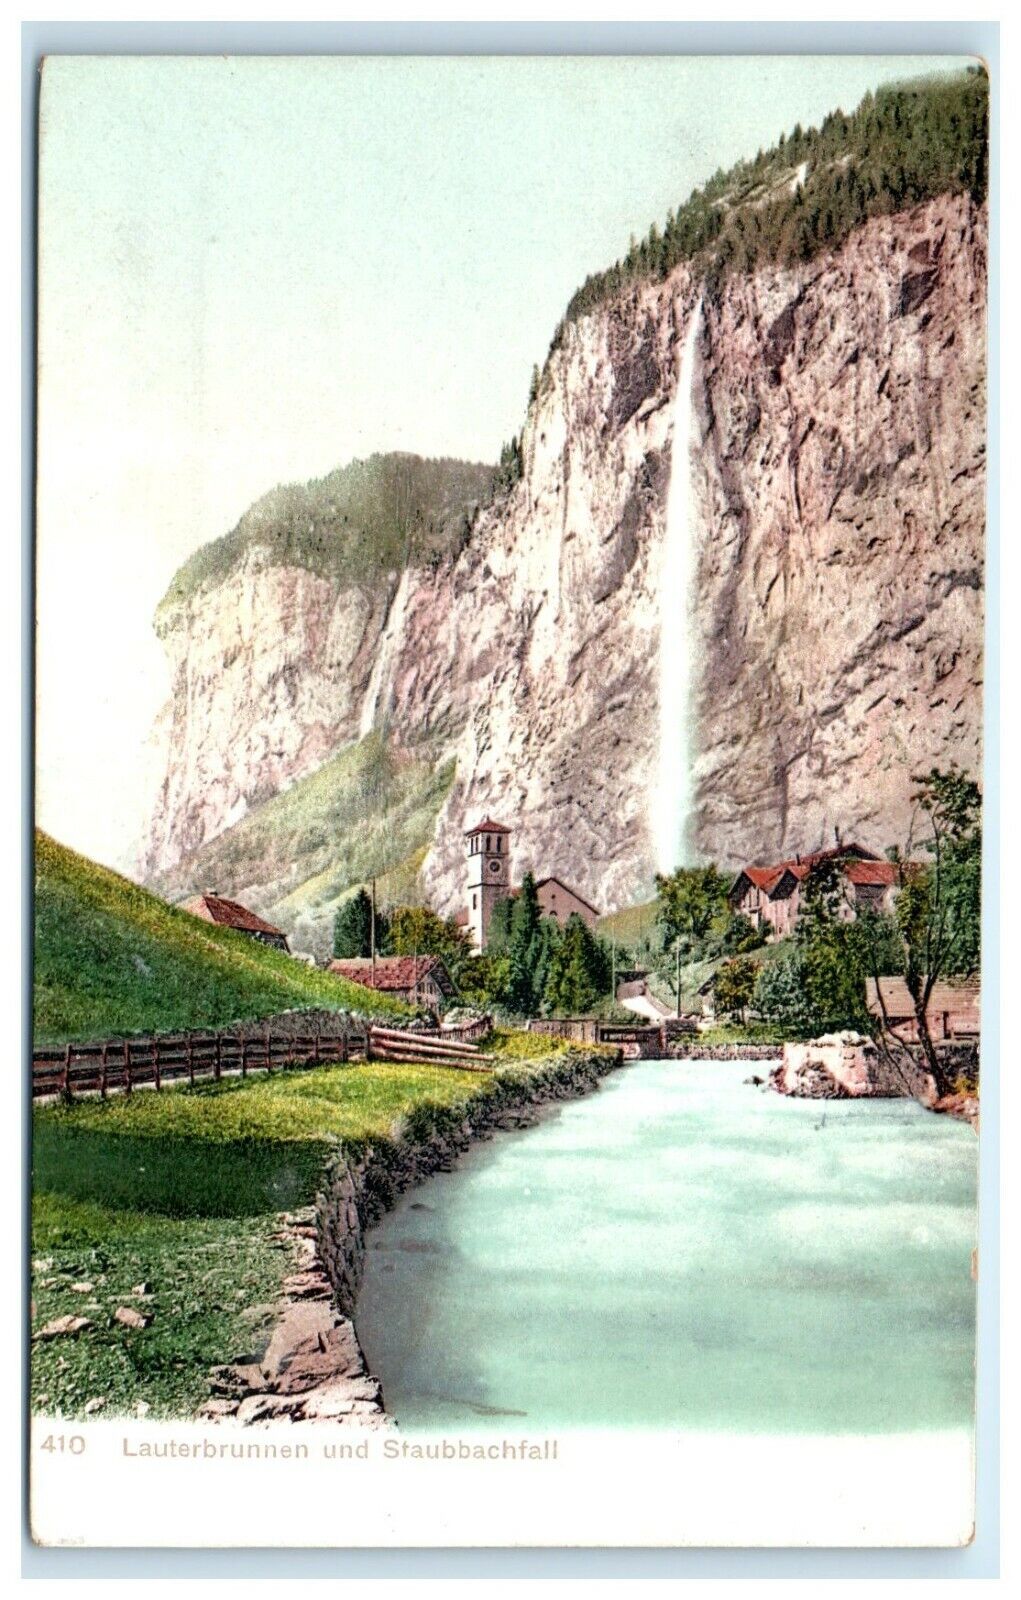 POSTCARD Lauterbrunnen und Staubbachfall Switzerland Waterfall 